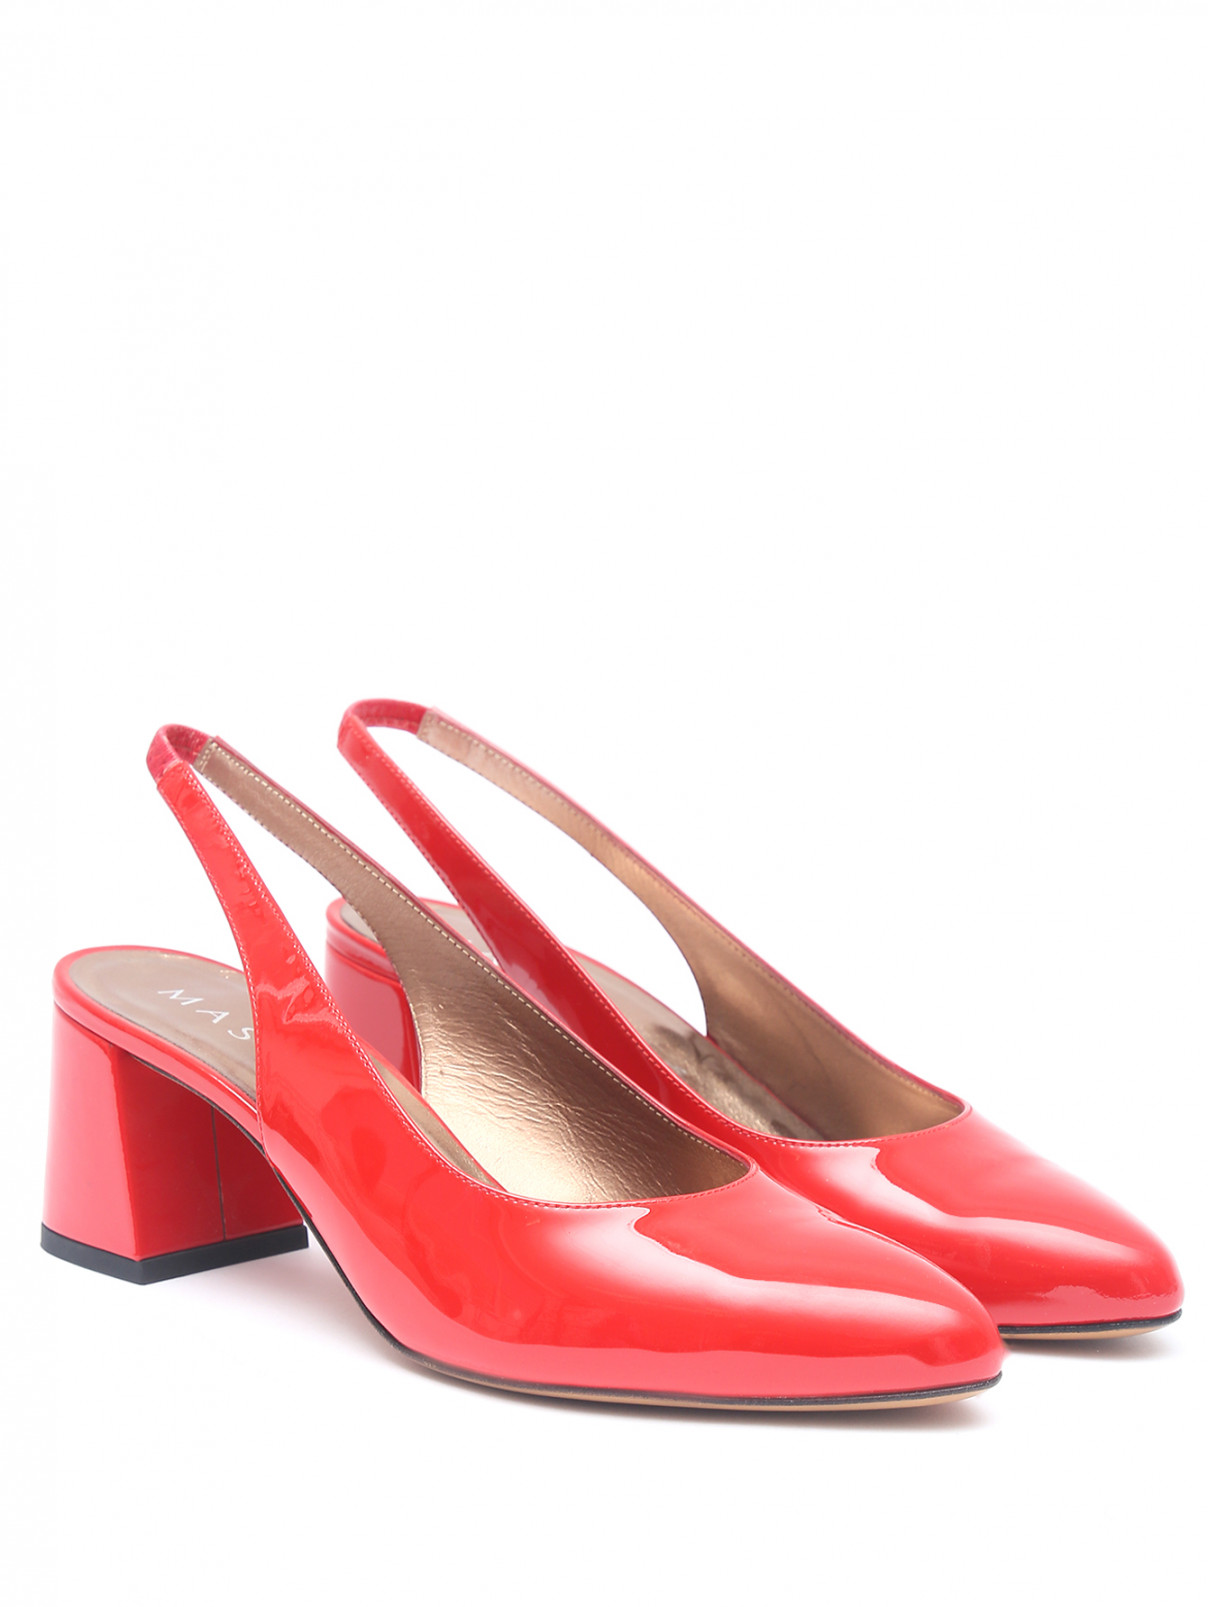 Туфли из лаковой кожи на устойчивом каблуке Mascaro  –  Общий вид  – Цвет:  Красный